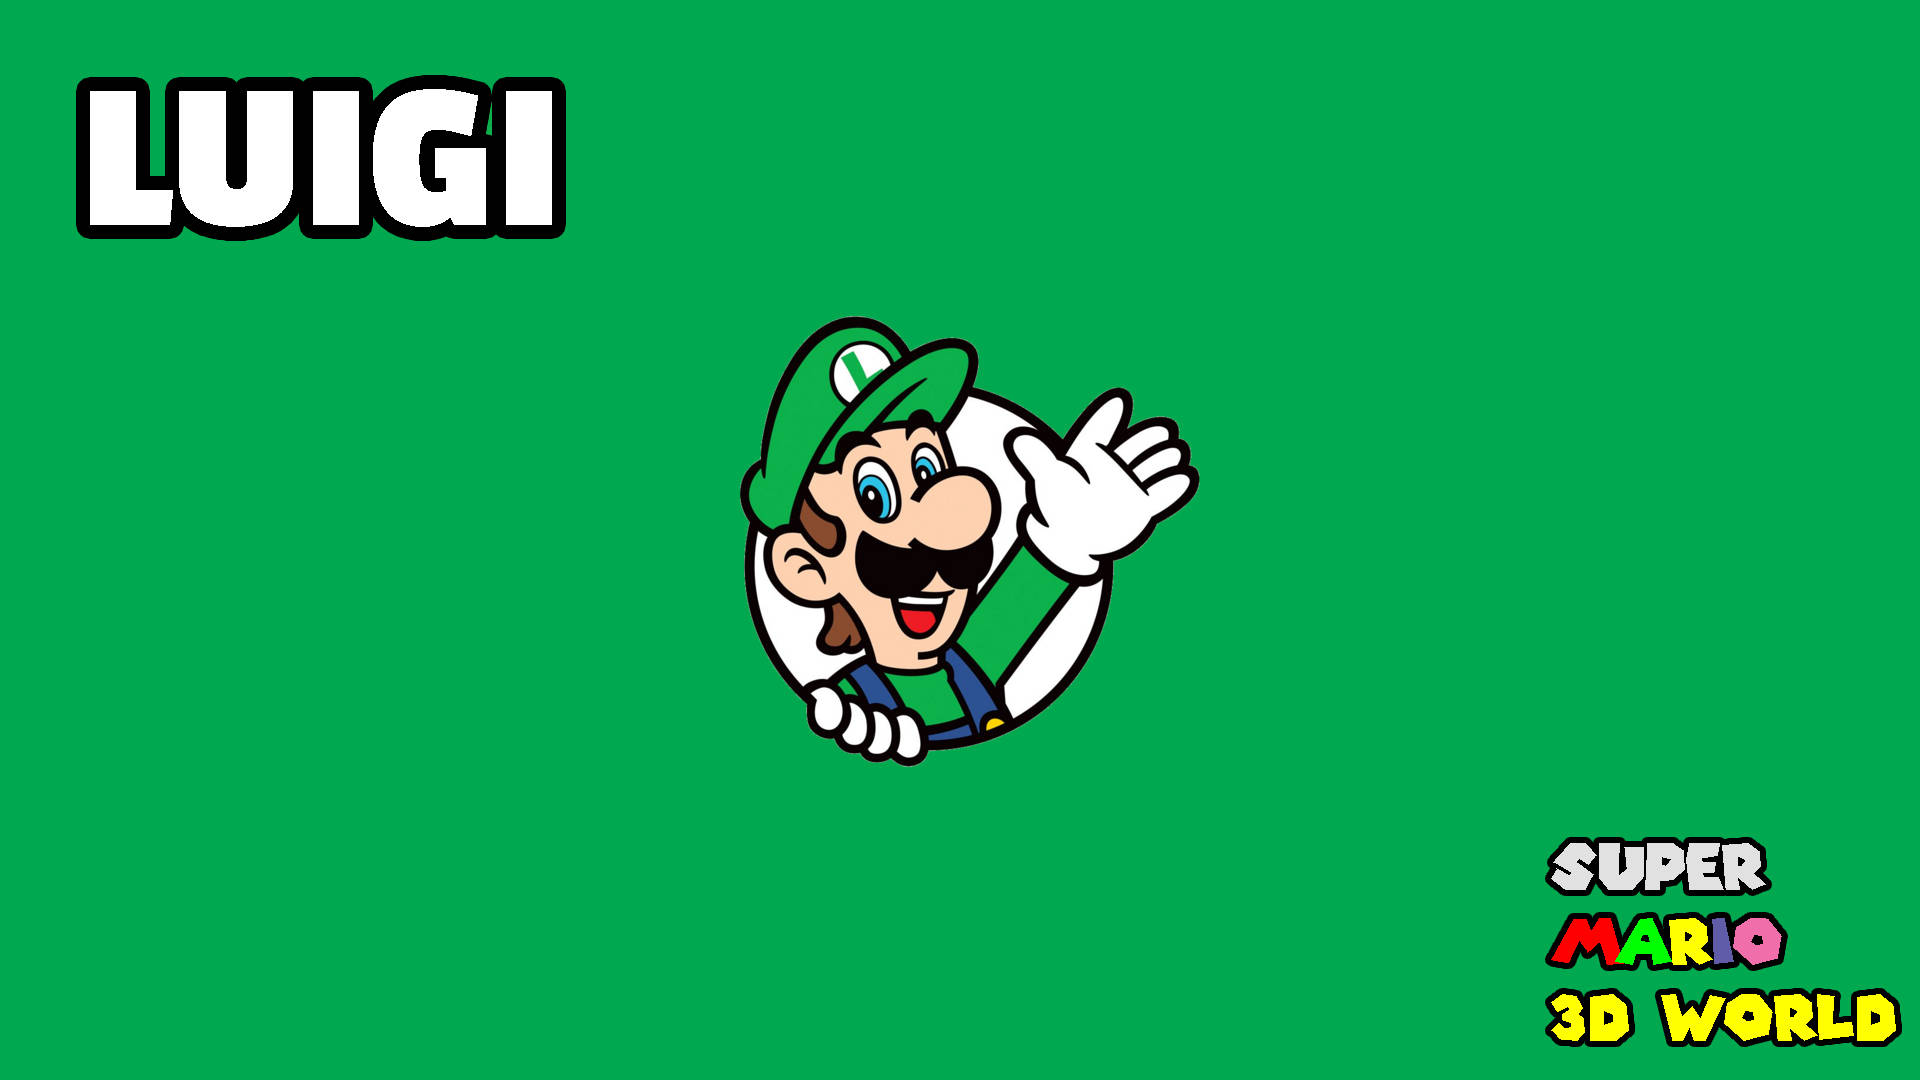 Super Marios' Luigi